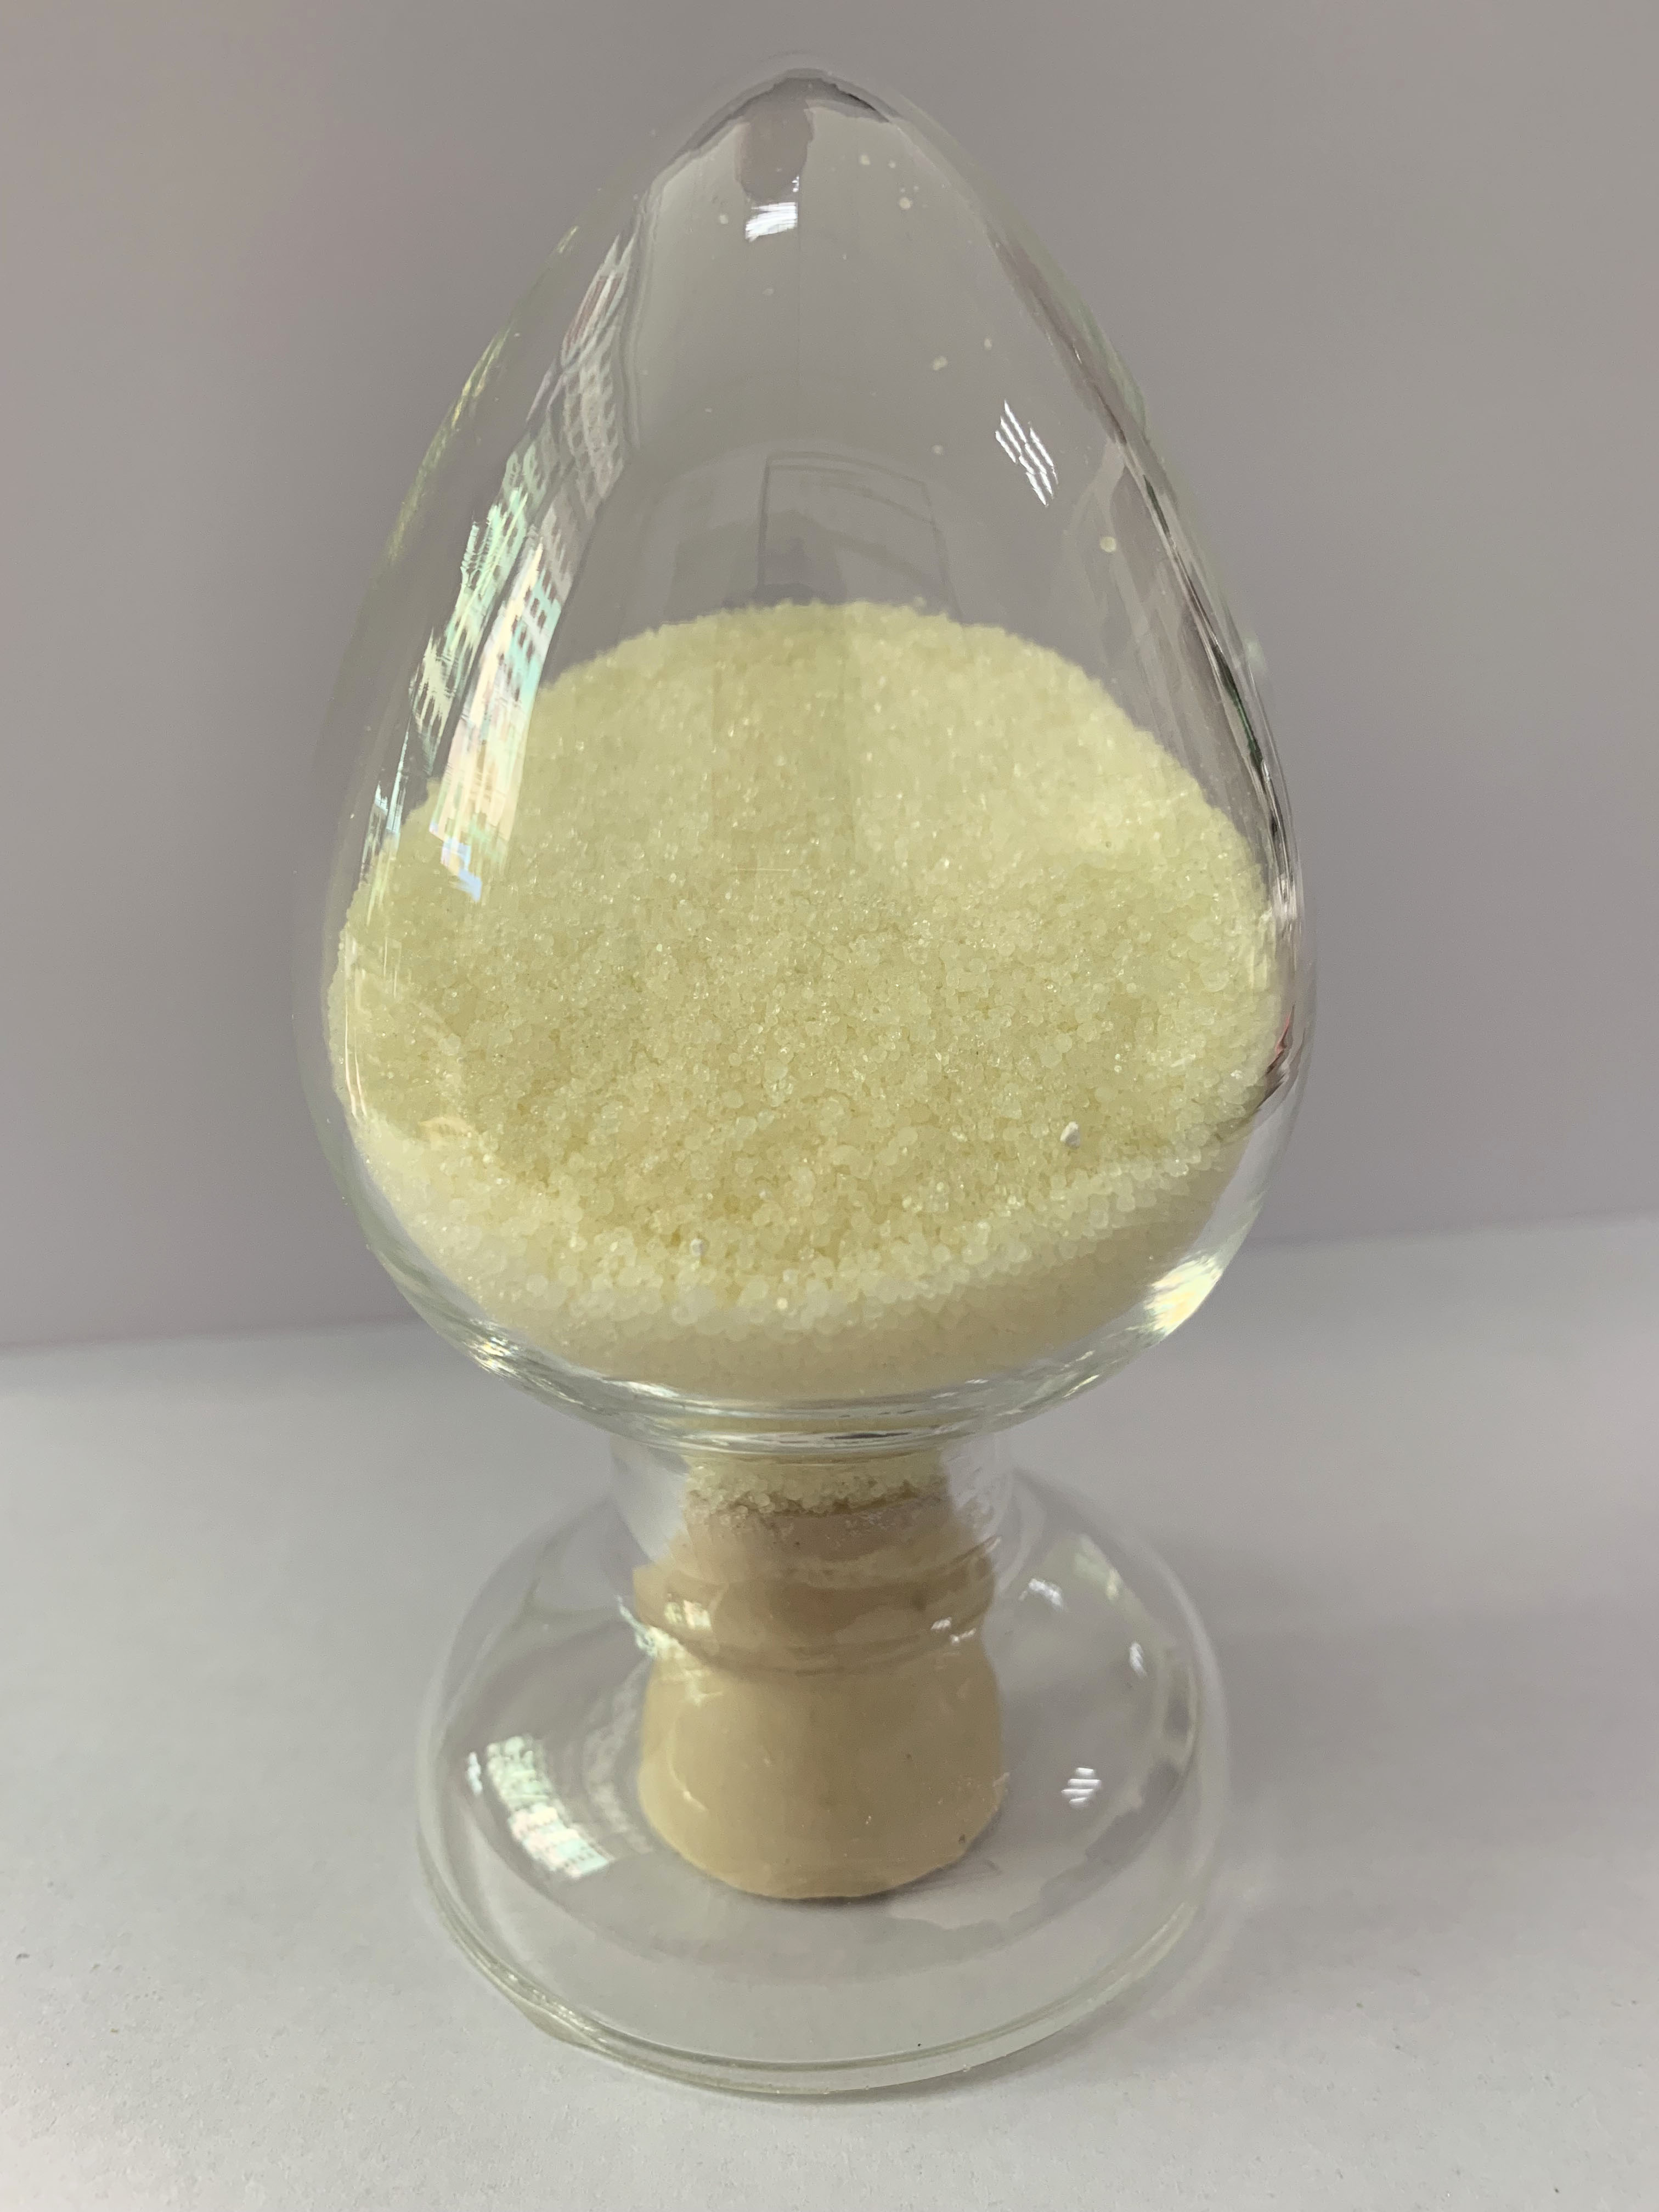 Purity 99% 13601-19-9 Sodium ferrocyanide